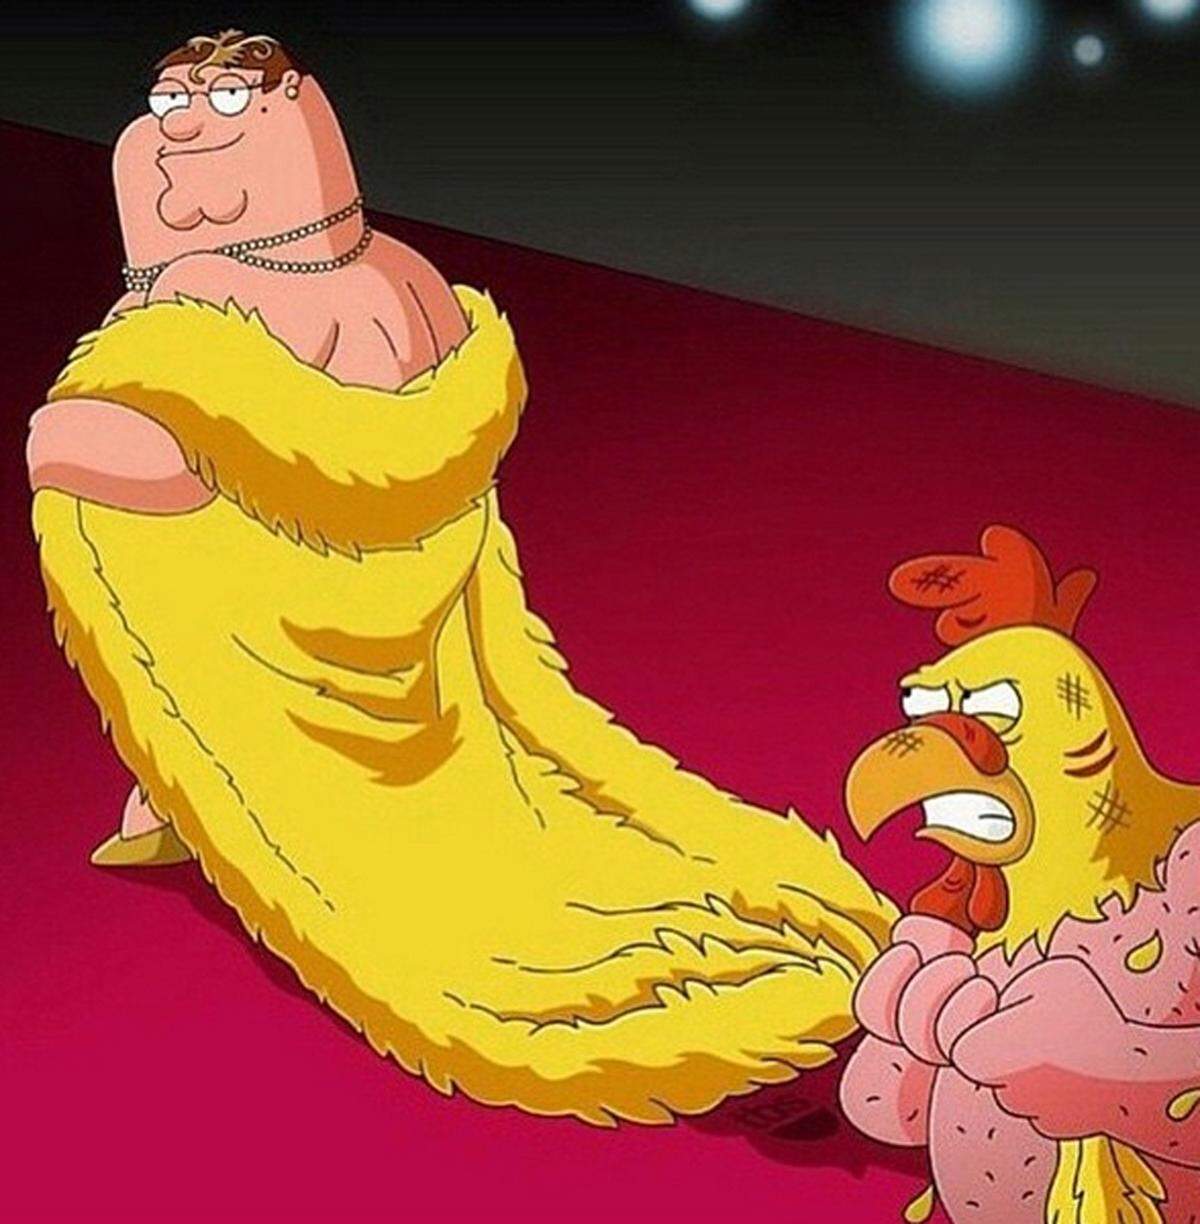 Aber auch Peter Griffin (Family Guy), der einem Huhn die Federn raubt, darf nicht fehlen.